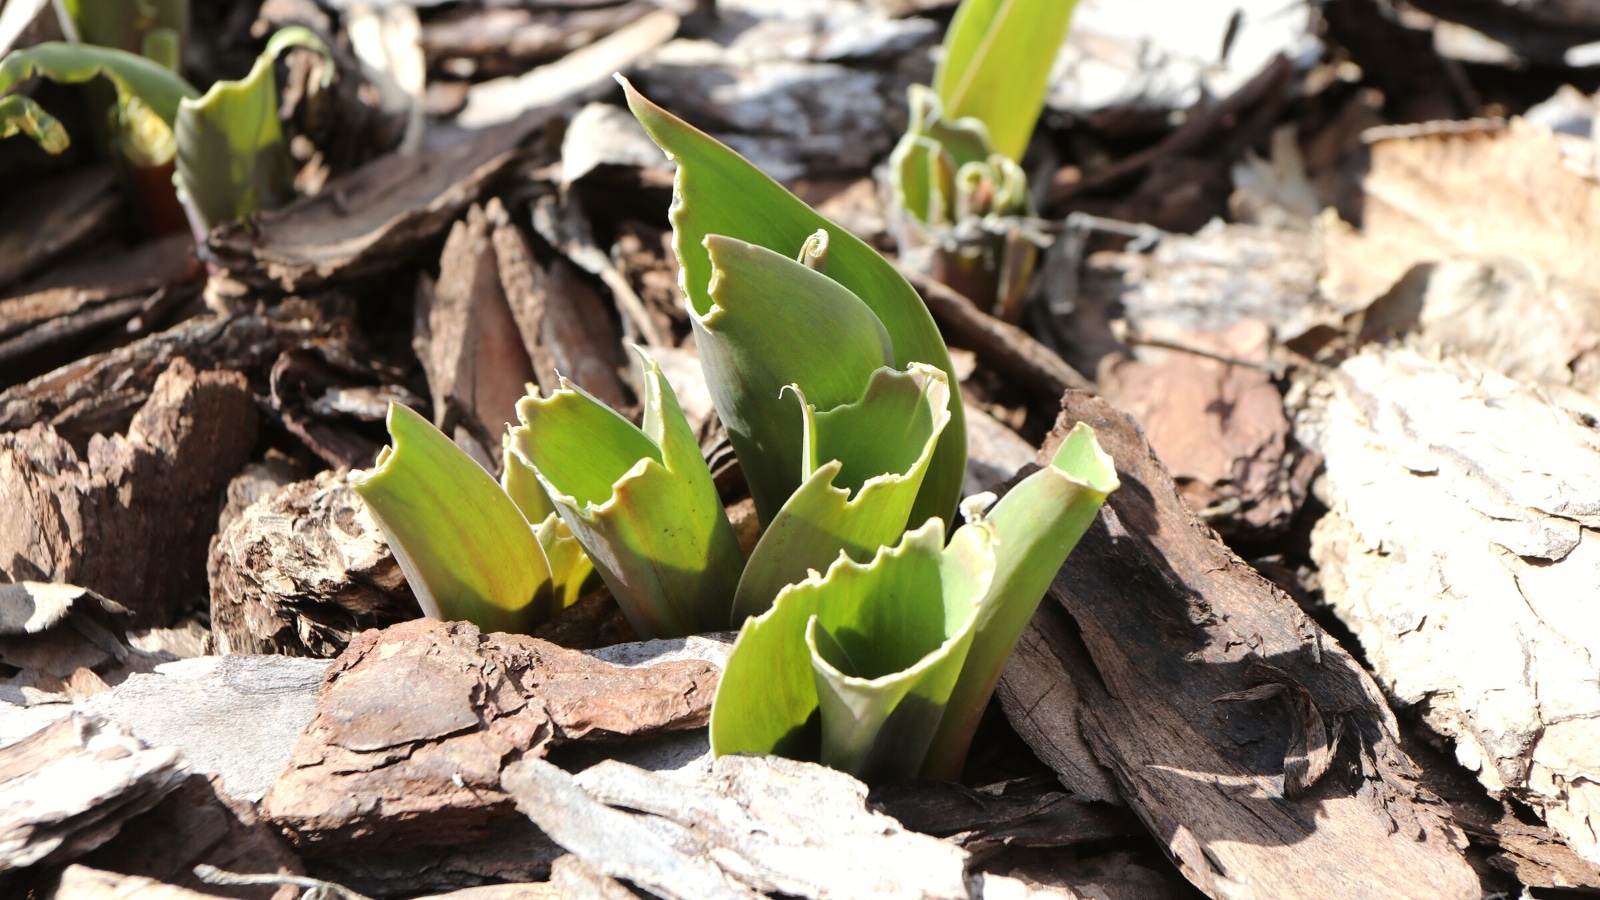 Un primer plano de la parte inferior verde de una planta revela signos de daños por conejos, posiblemente comidos.  La planta está rodeada de mantillo de madera, lo que proporciona un lecho natural para el crecimiento y la protección.